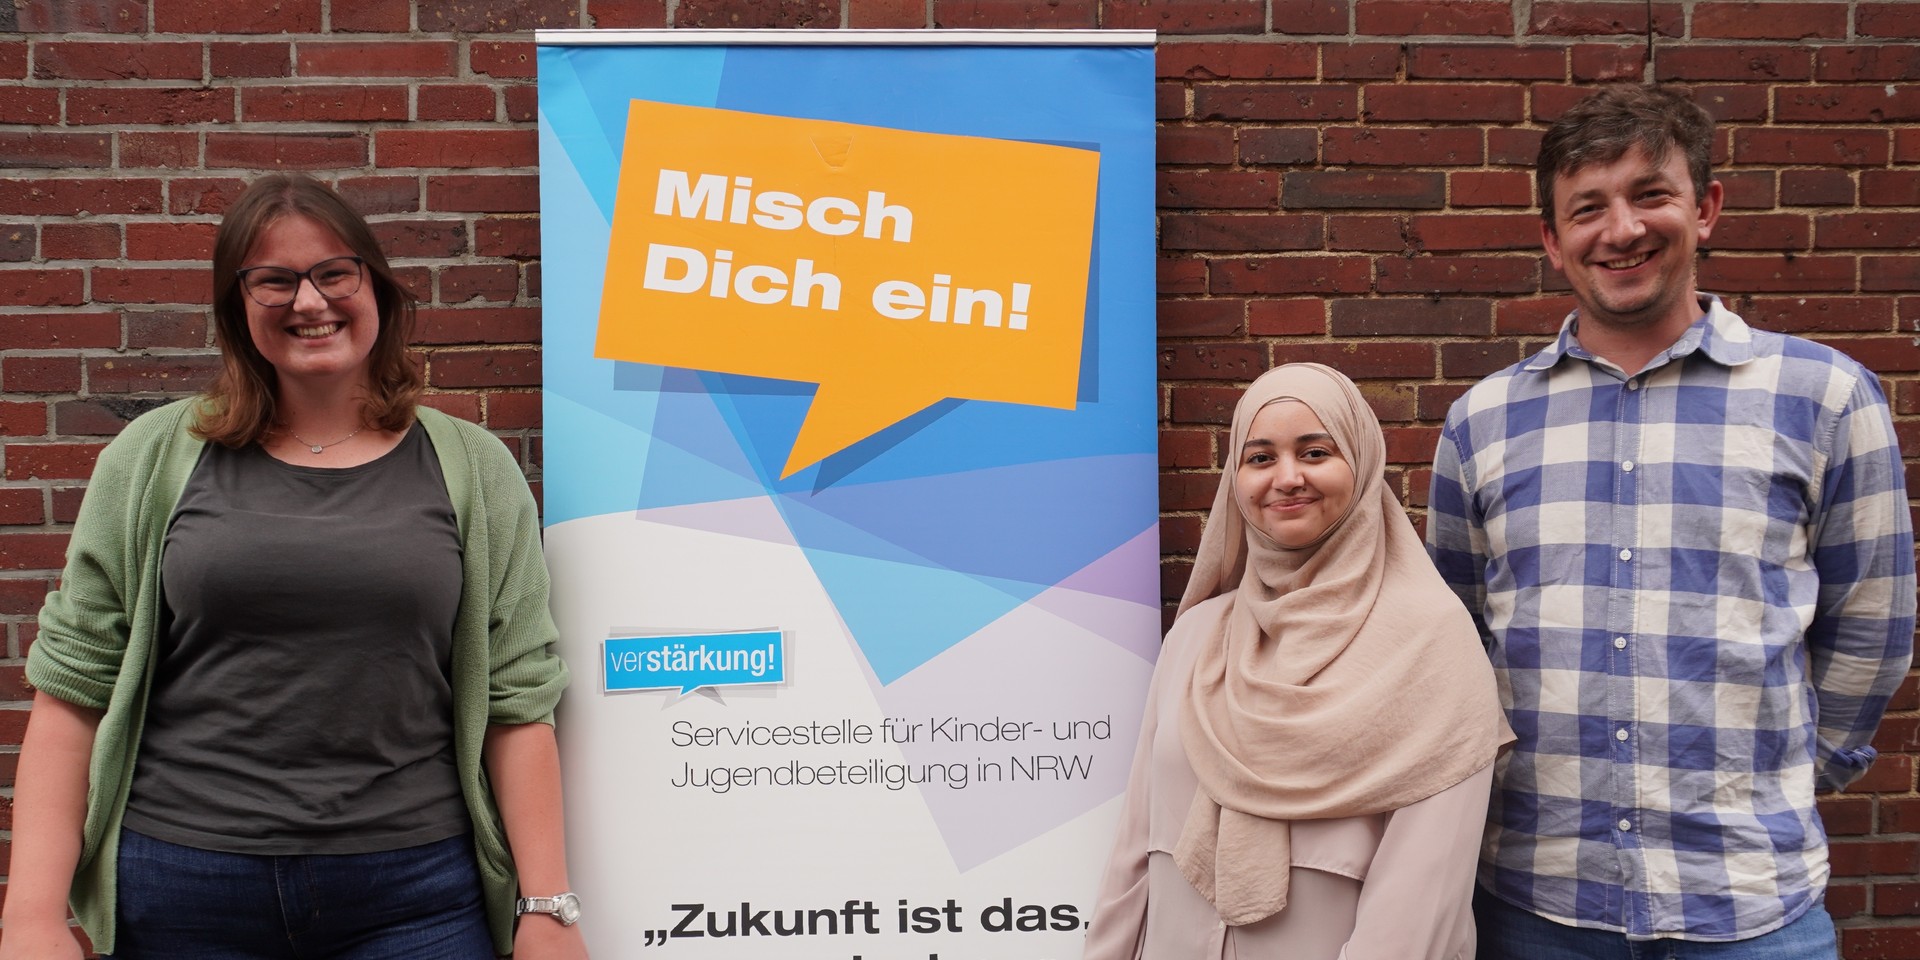 Servicestelle für Kinder- und Jugendbeteiligung in NRW stellt neues Team vor